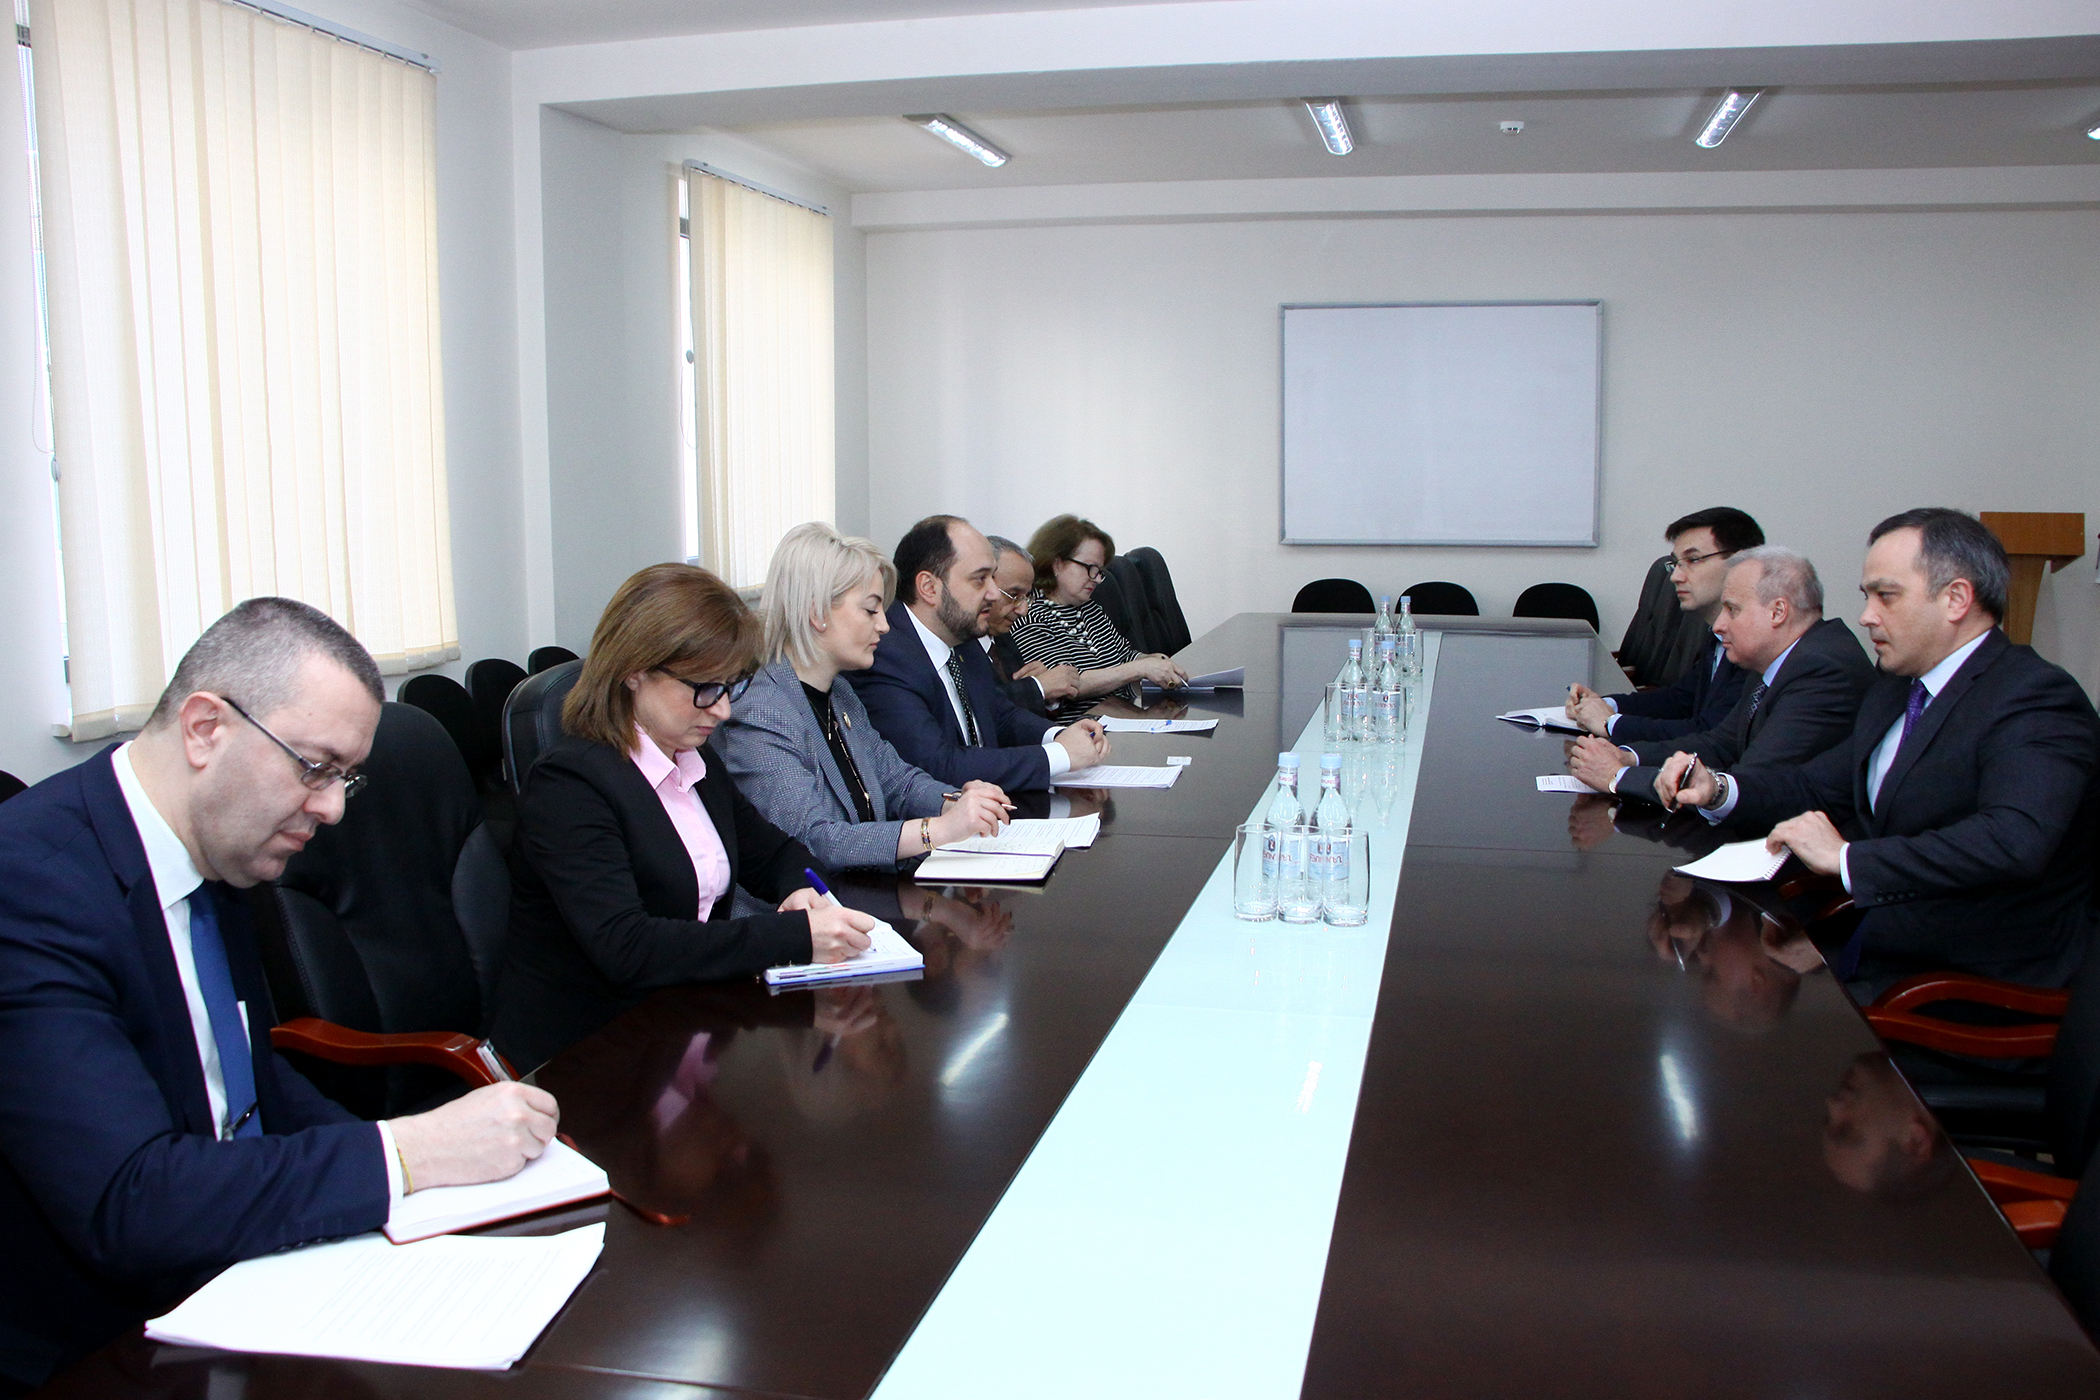 Հայաստանում ռուսաց լեզվի ուսուցիչները կվերապատրաստվեն ՌԴ բուհերում. հանդիպում ԿԳՆ-ում